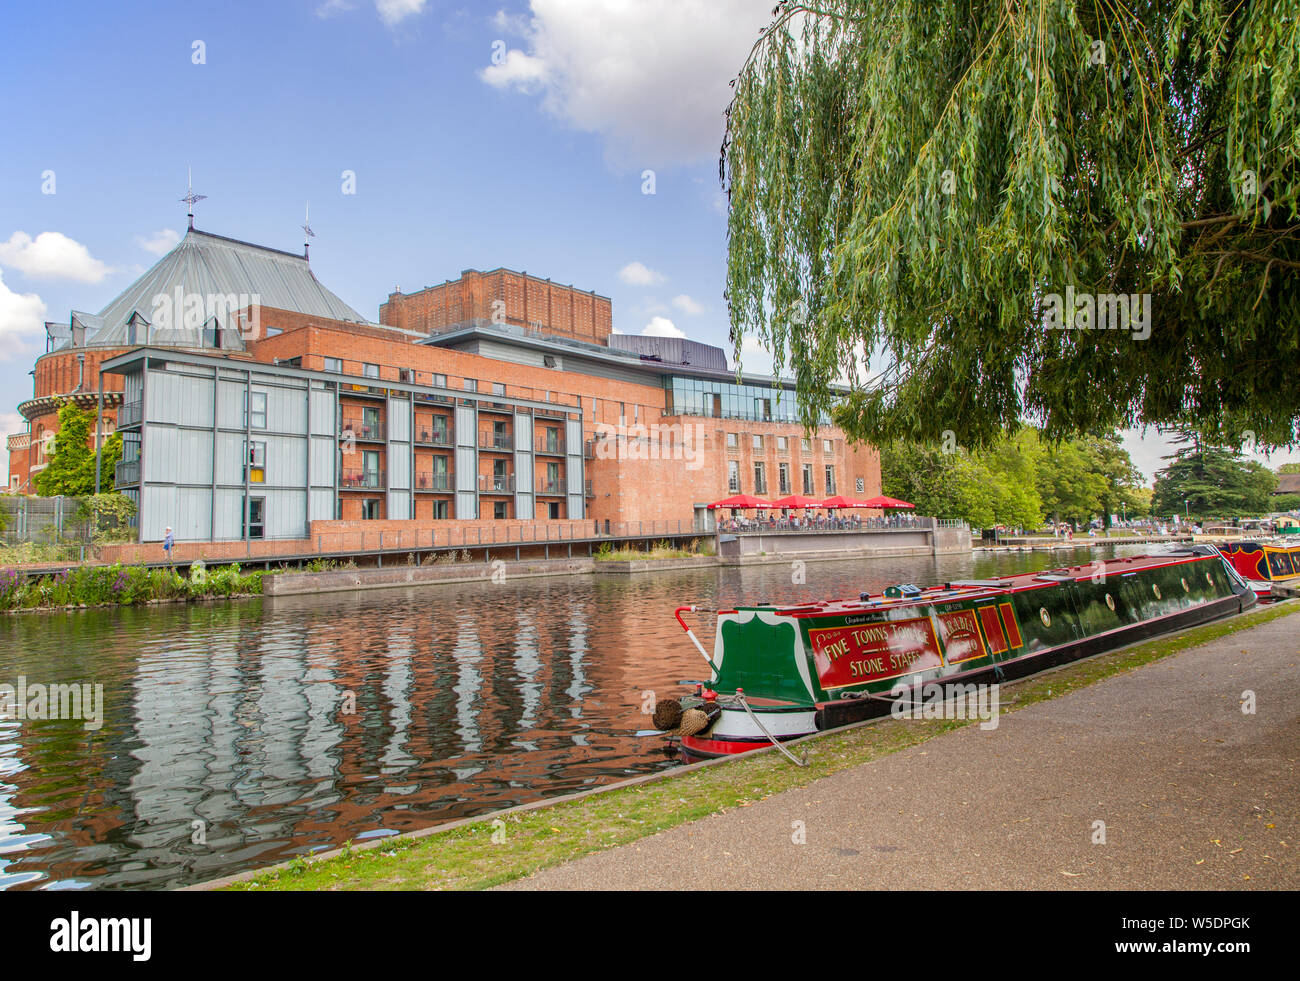 15-04 Canal sur la rivière Avon passant le Royal Shakespeare Theatre à travers la ville de Stratford Upon Avon, Warwickshire, Angleterre Banque D'Images